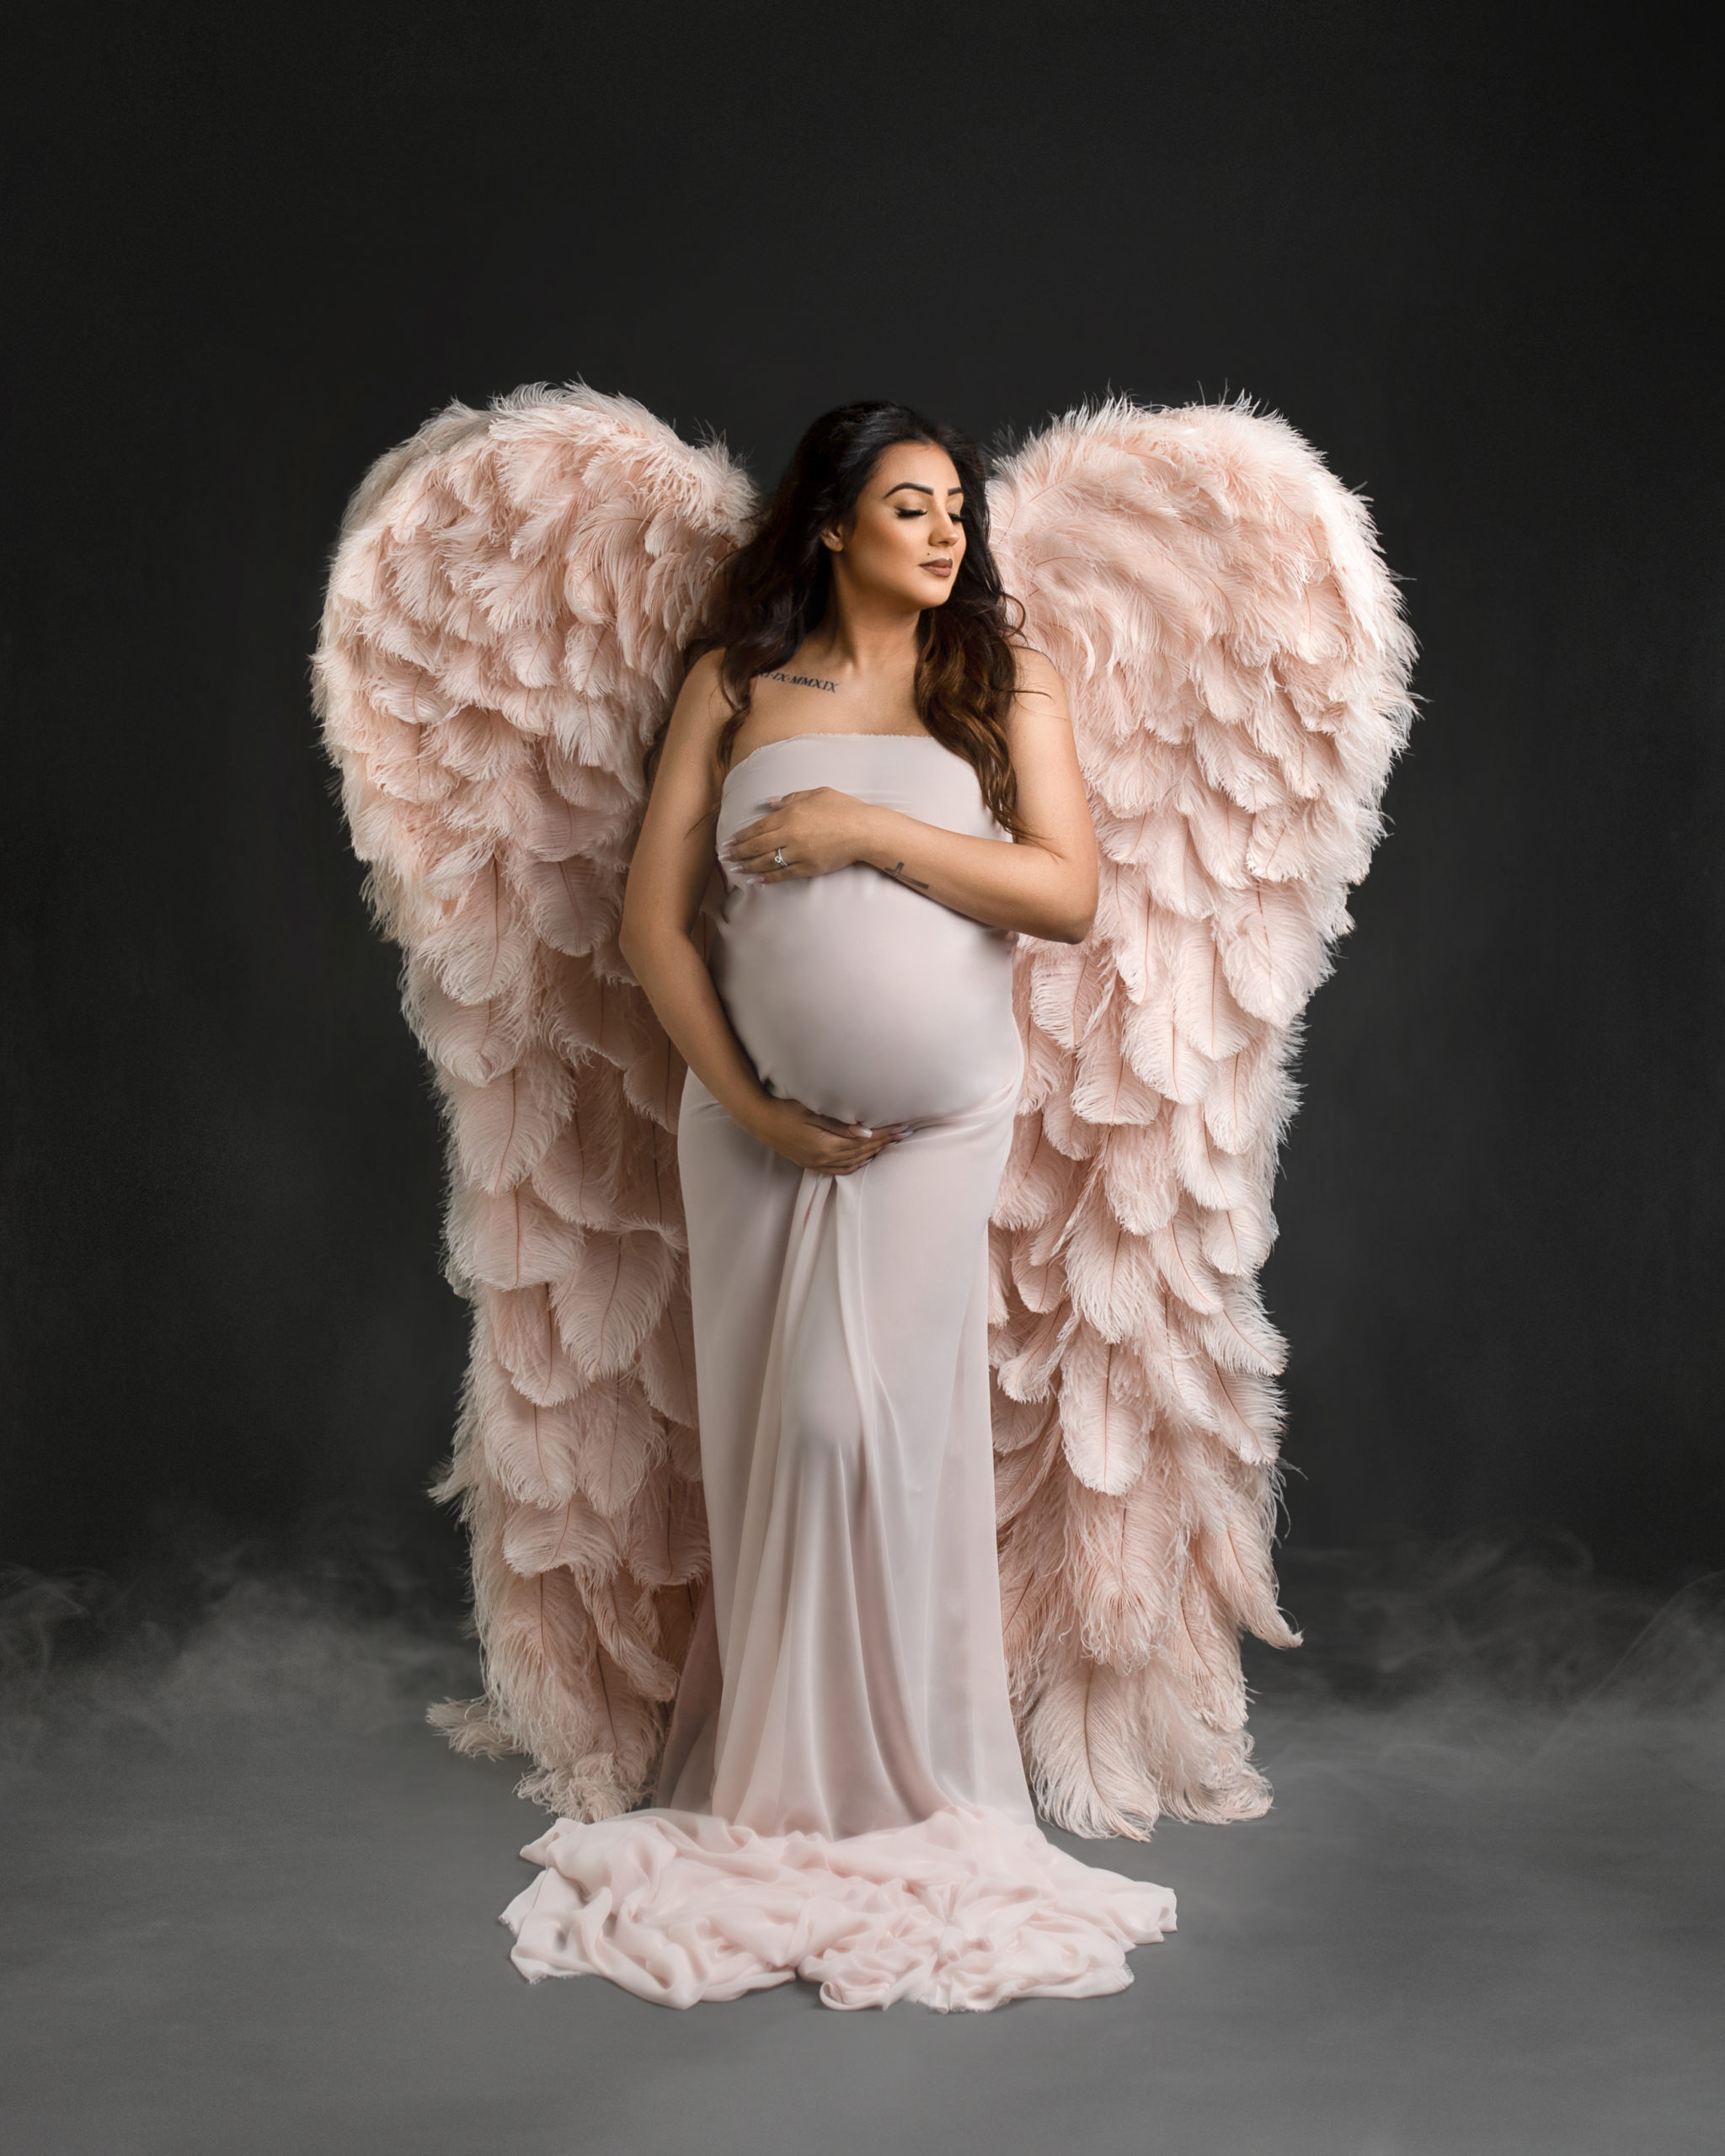 maternity photo shoot